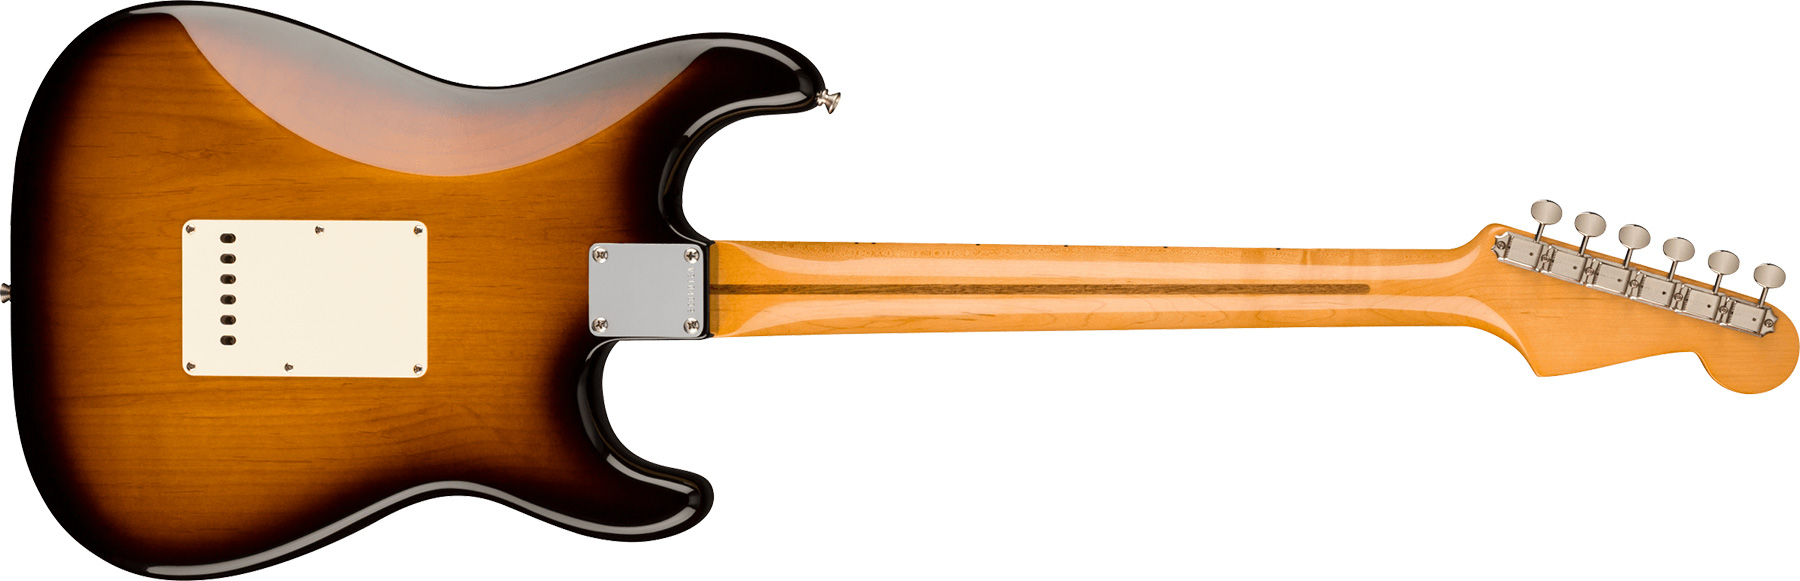 Fender Strat 1957 American Vintage Ii Lh Gaucher Usa 3s Trem Mn - 2-color Sunburst - Left-handed electric guitar - Variation 1